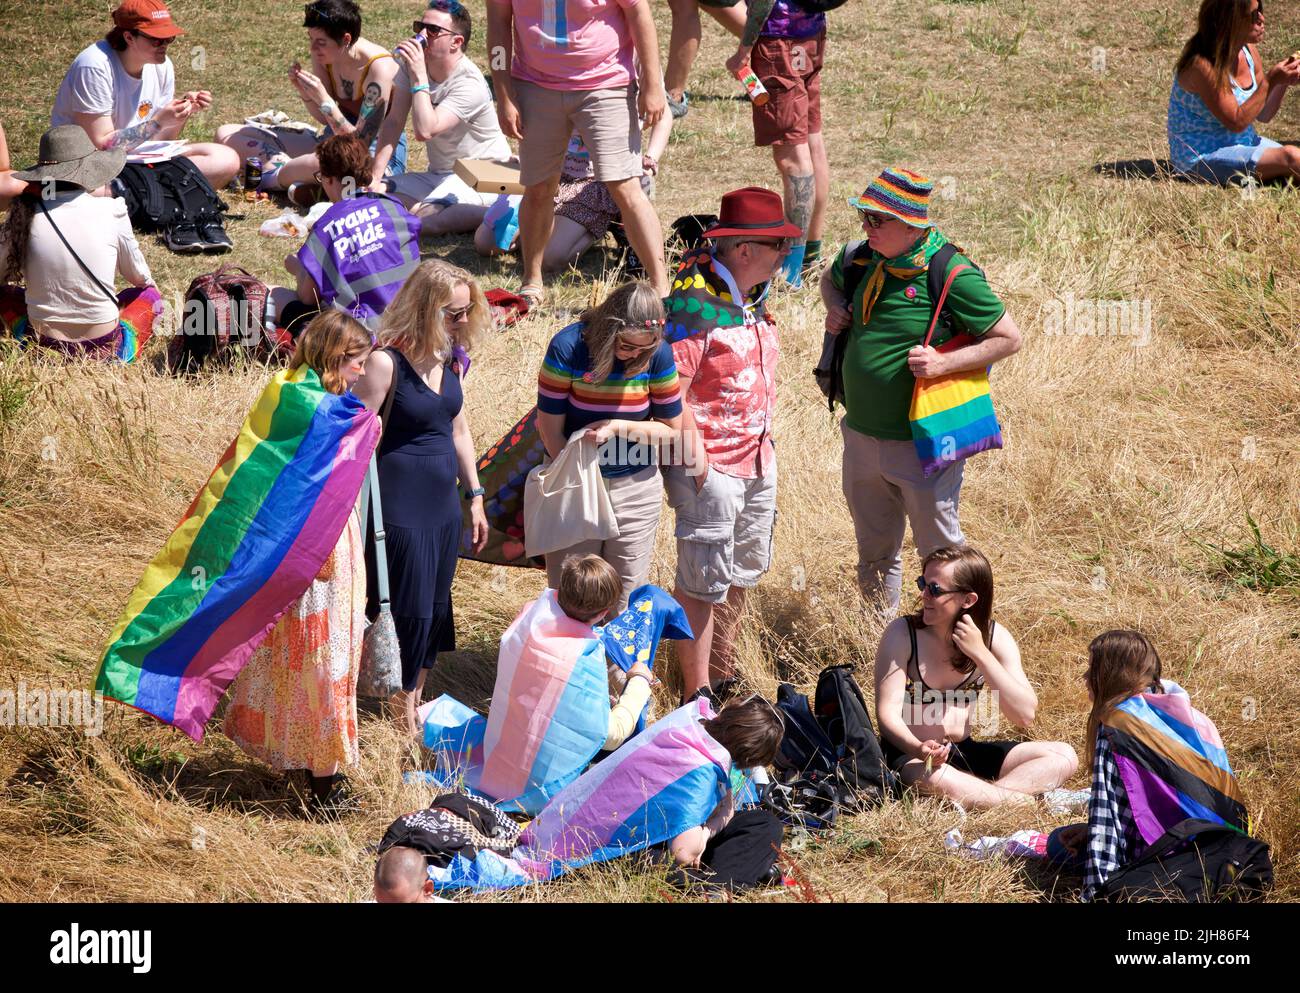 Procession du TRANS Pride Festival, Brighton et Hove. 16 juillet 2022. Les gens se rassemblent pour le point culminant du Trans Pride Rally and Festival annuel à Brunswick Square, Brighton & Hove, en Angleterre. Credit: J. Marshall / Alamy Live News Banque D'Images